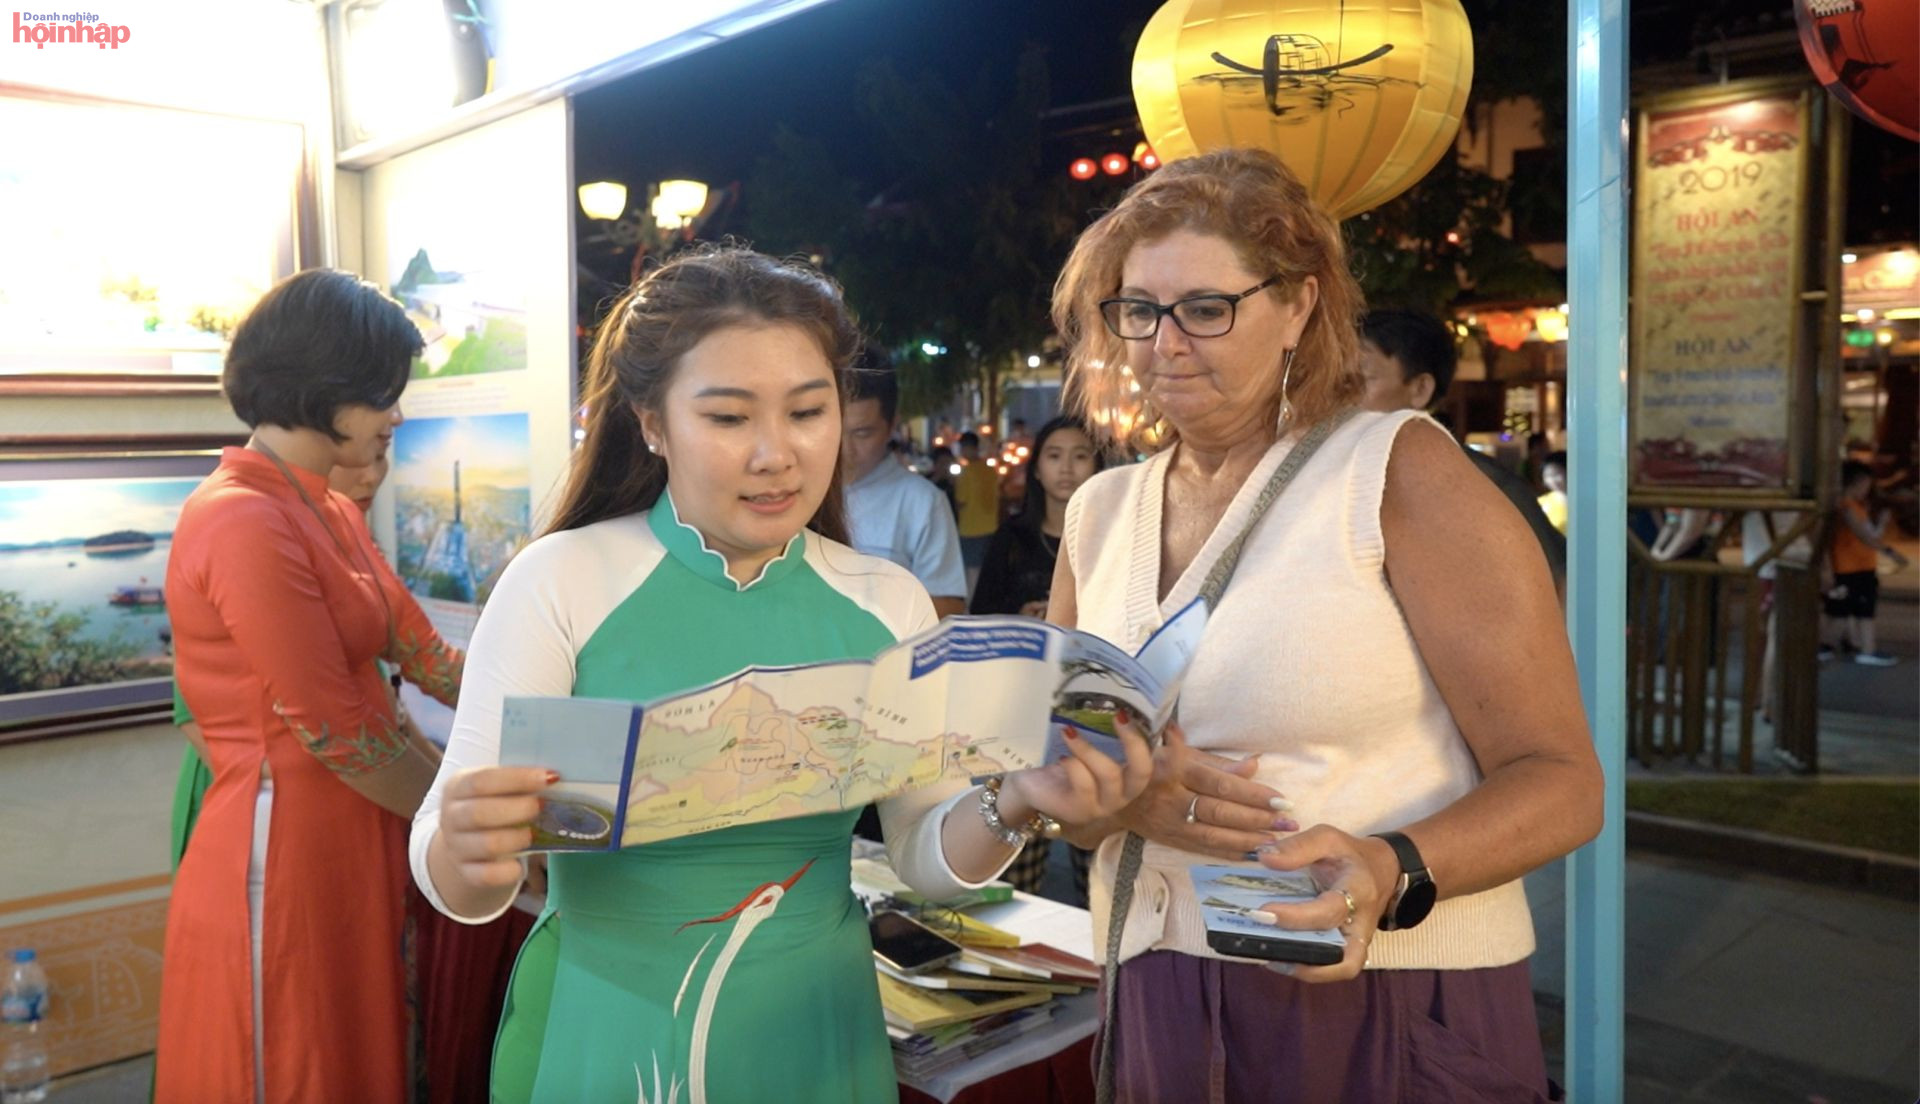 Triền lãm “Không gian văn hóa Việt Nam” diễn ra từ ngày 8 đến hết ngày 13 tháng 7 năm 2022 thu hút nhiều du khách trong và ngaoif nước đến tham quan